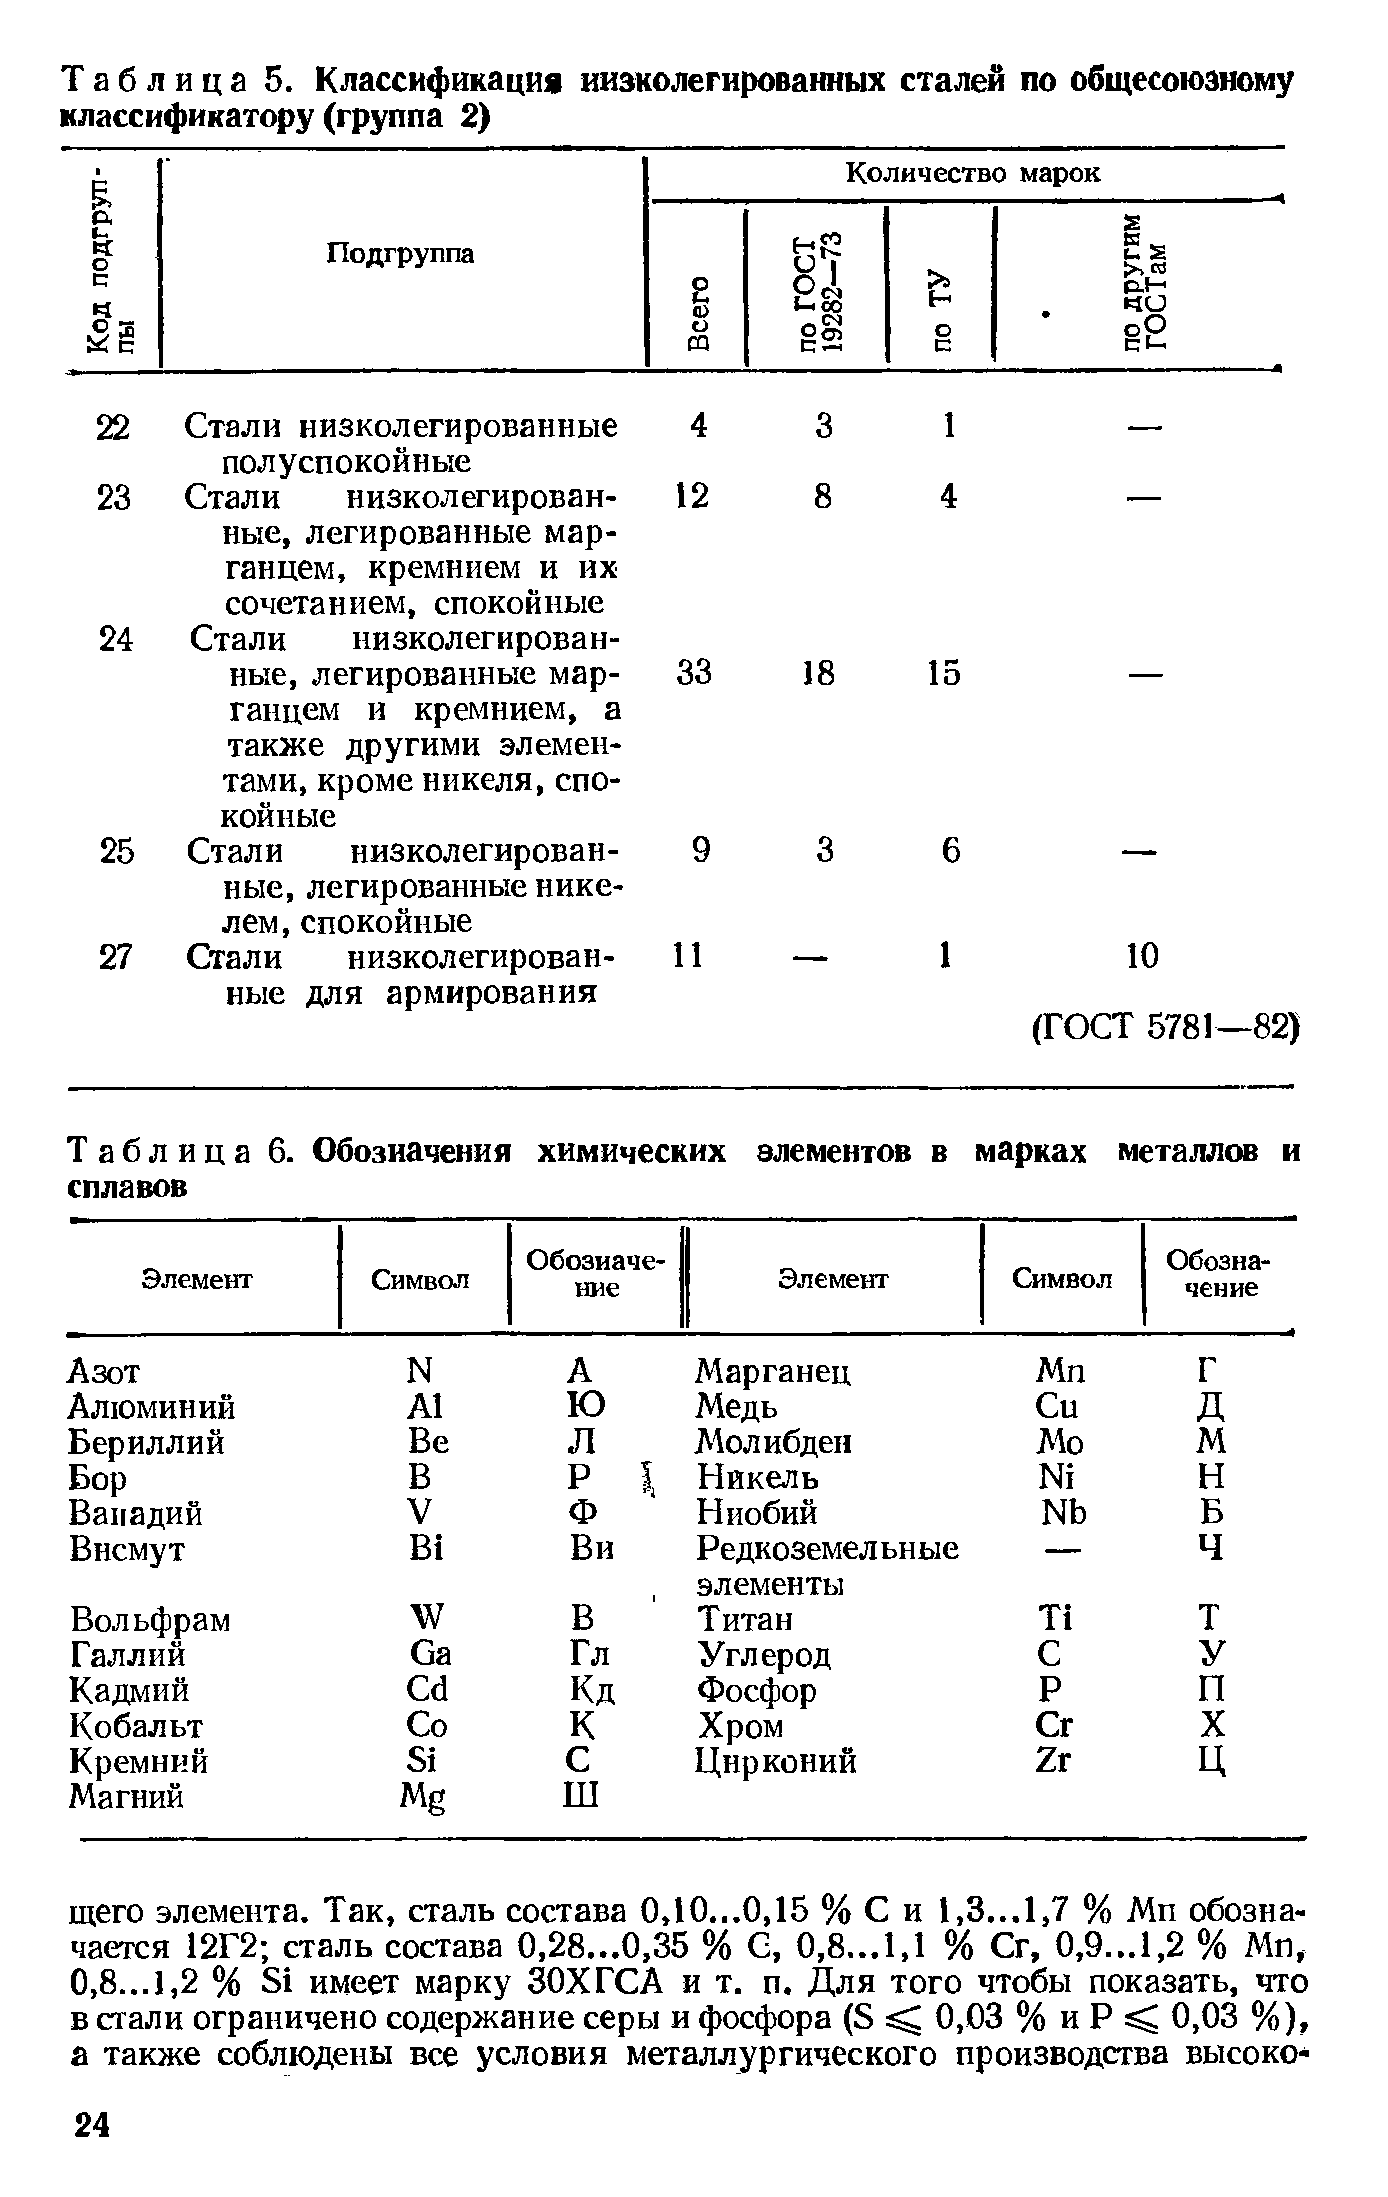 Таблица 6. Обозначения химических элементов в марках металлов и сплавов